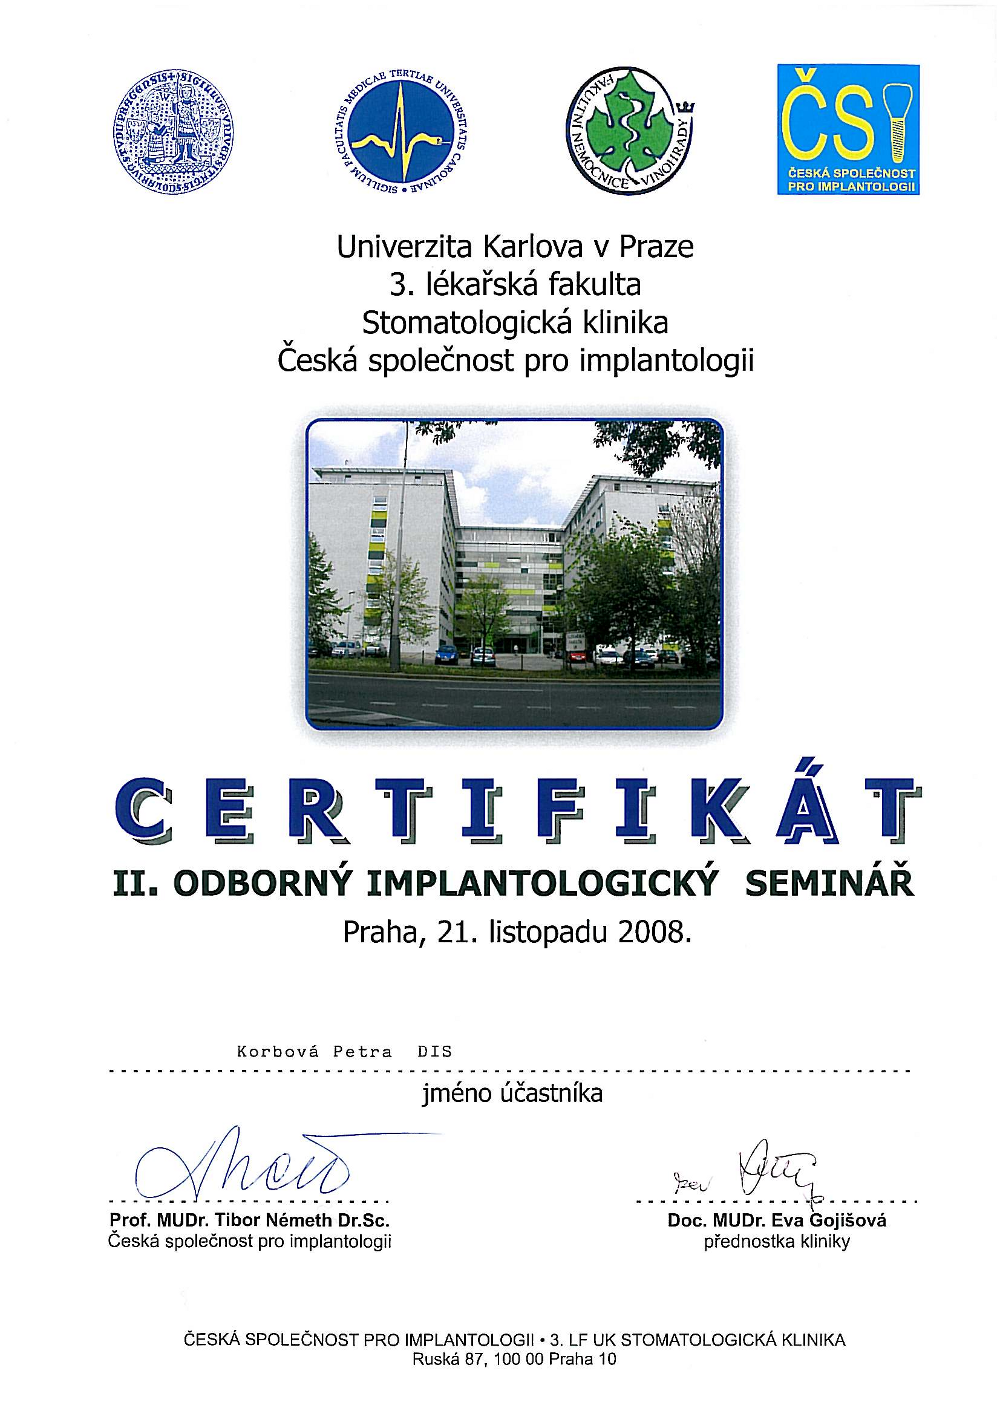 CErtifikát Petra Korbová